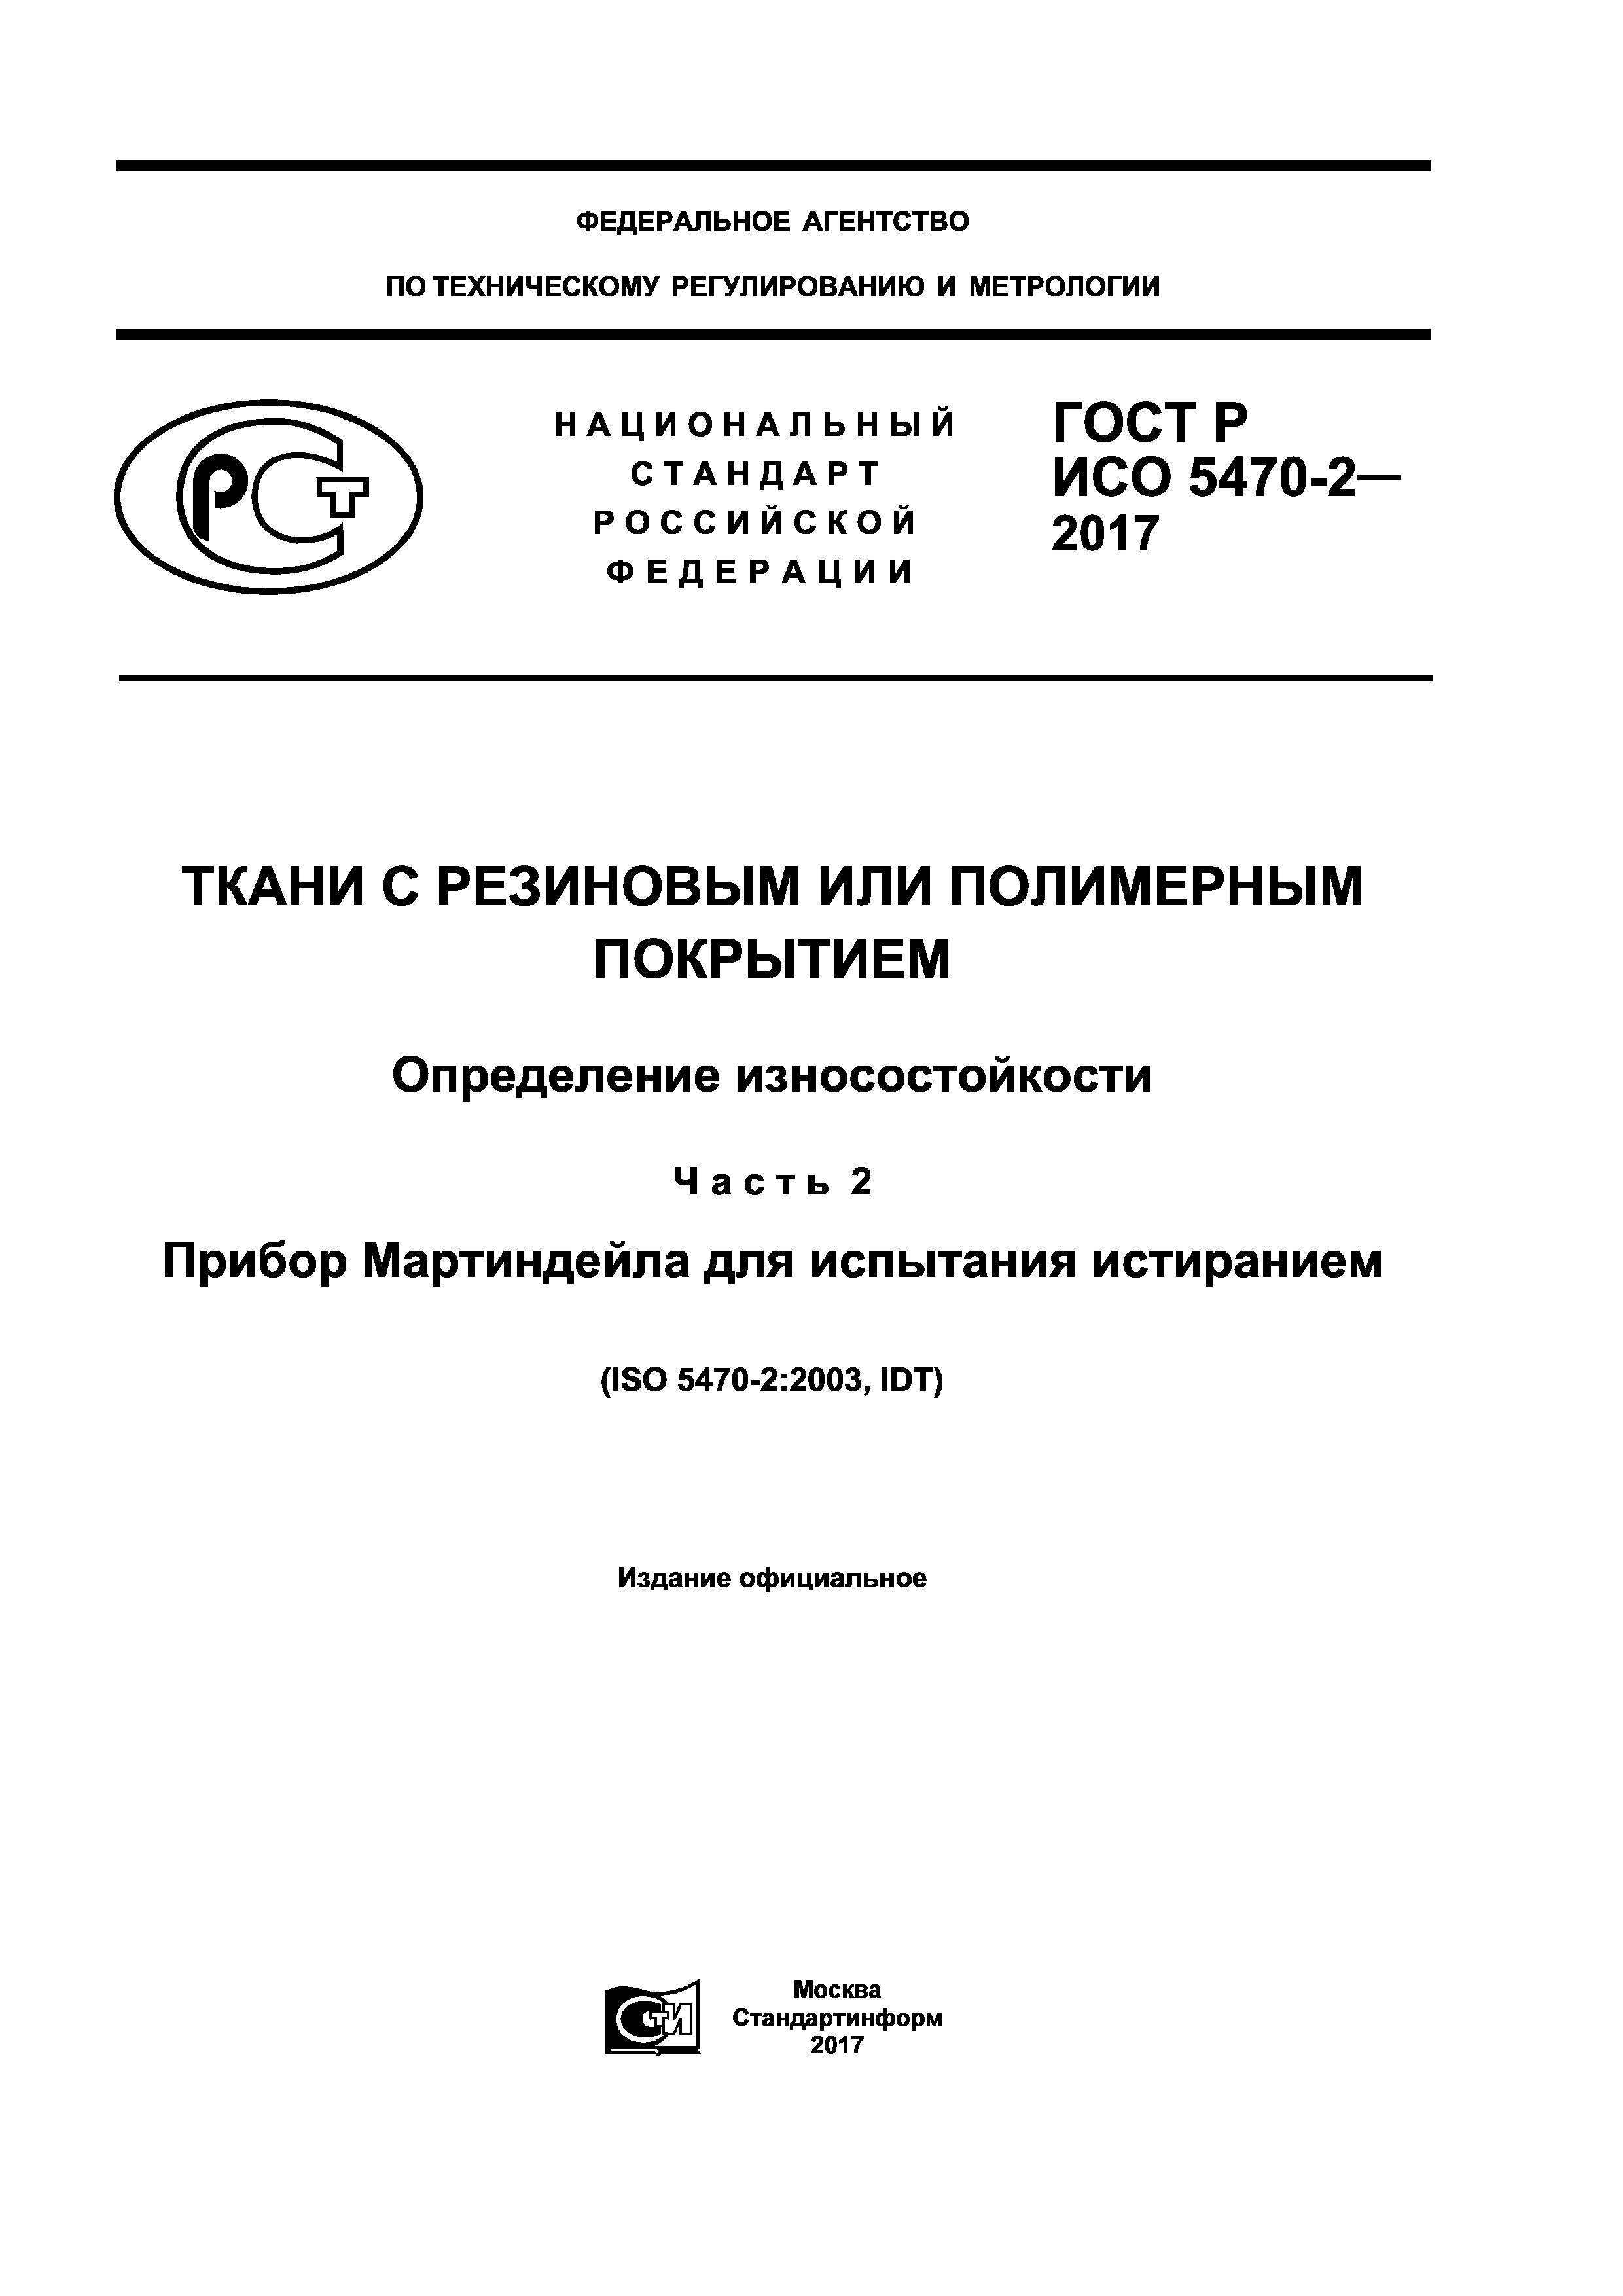 ГОСТ Р ИСО 5470-2-2017